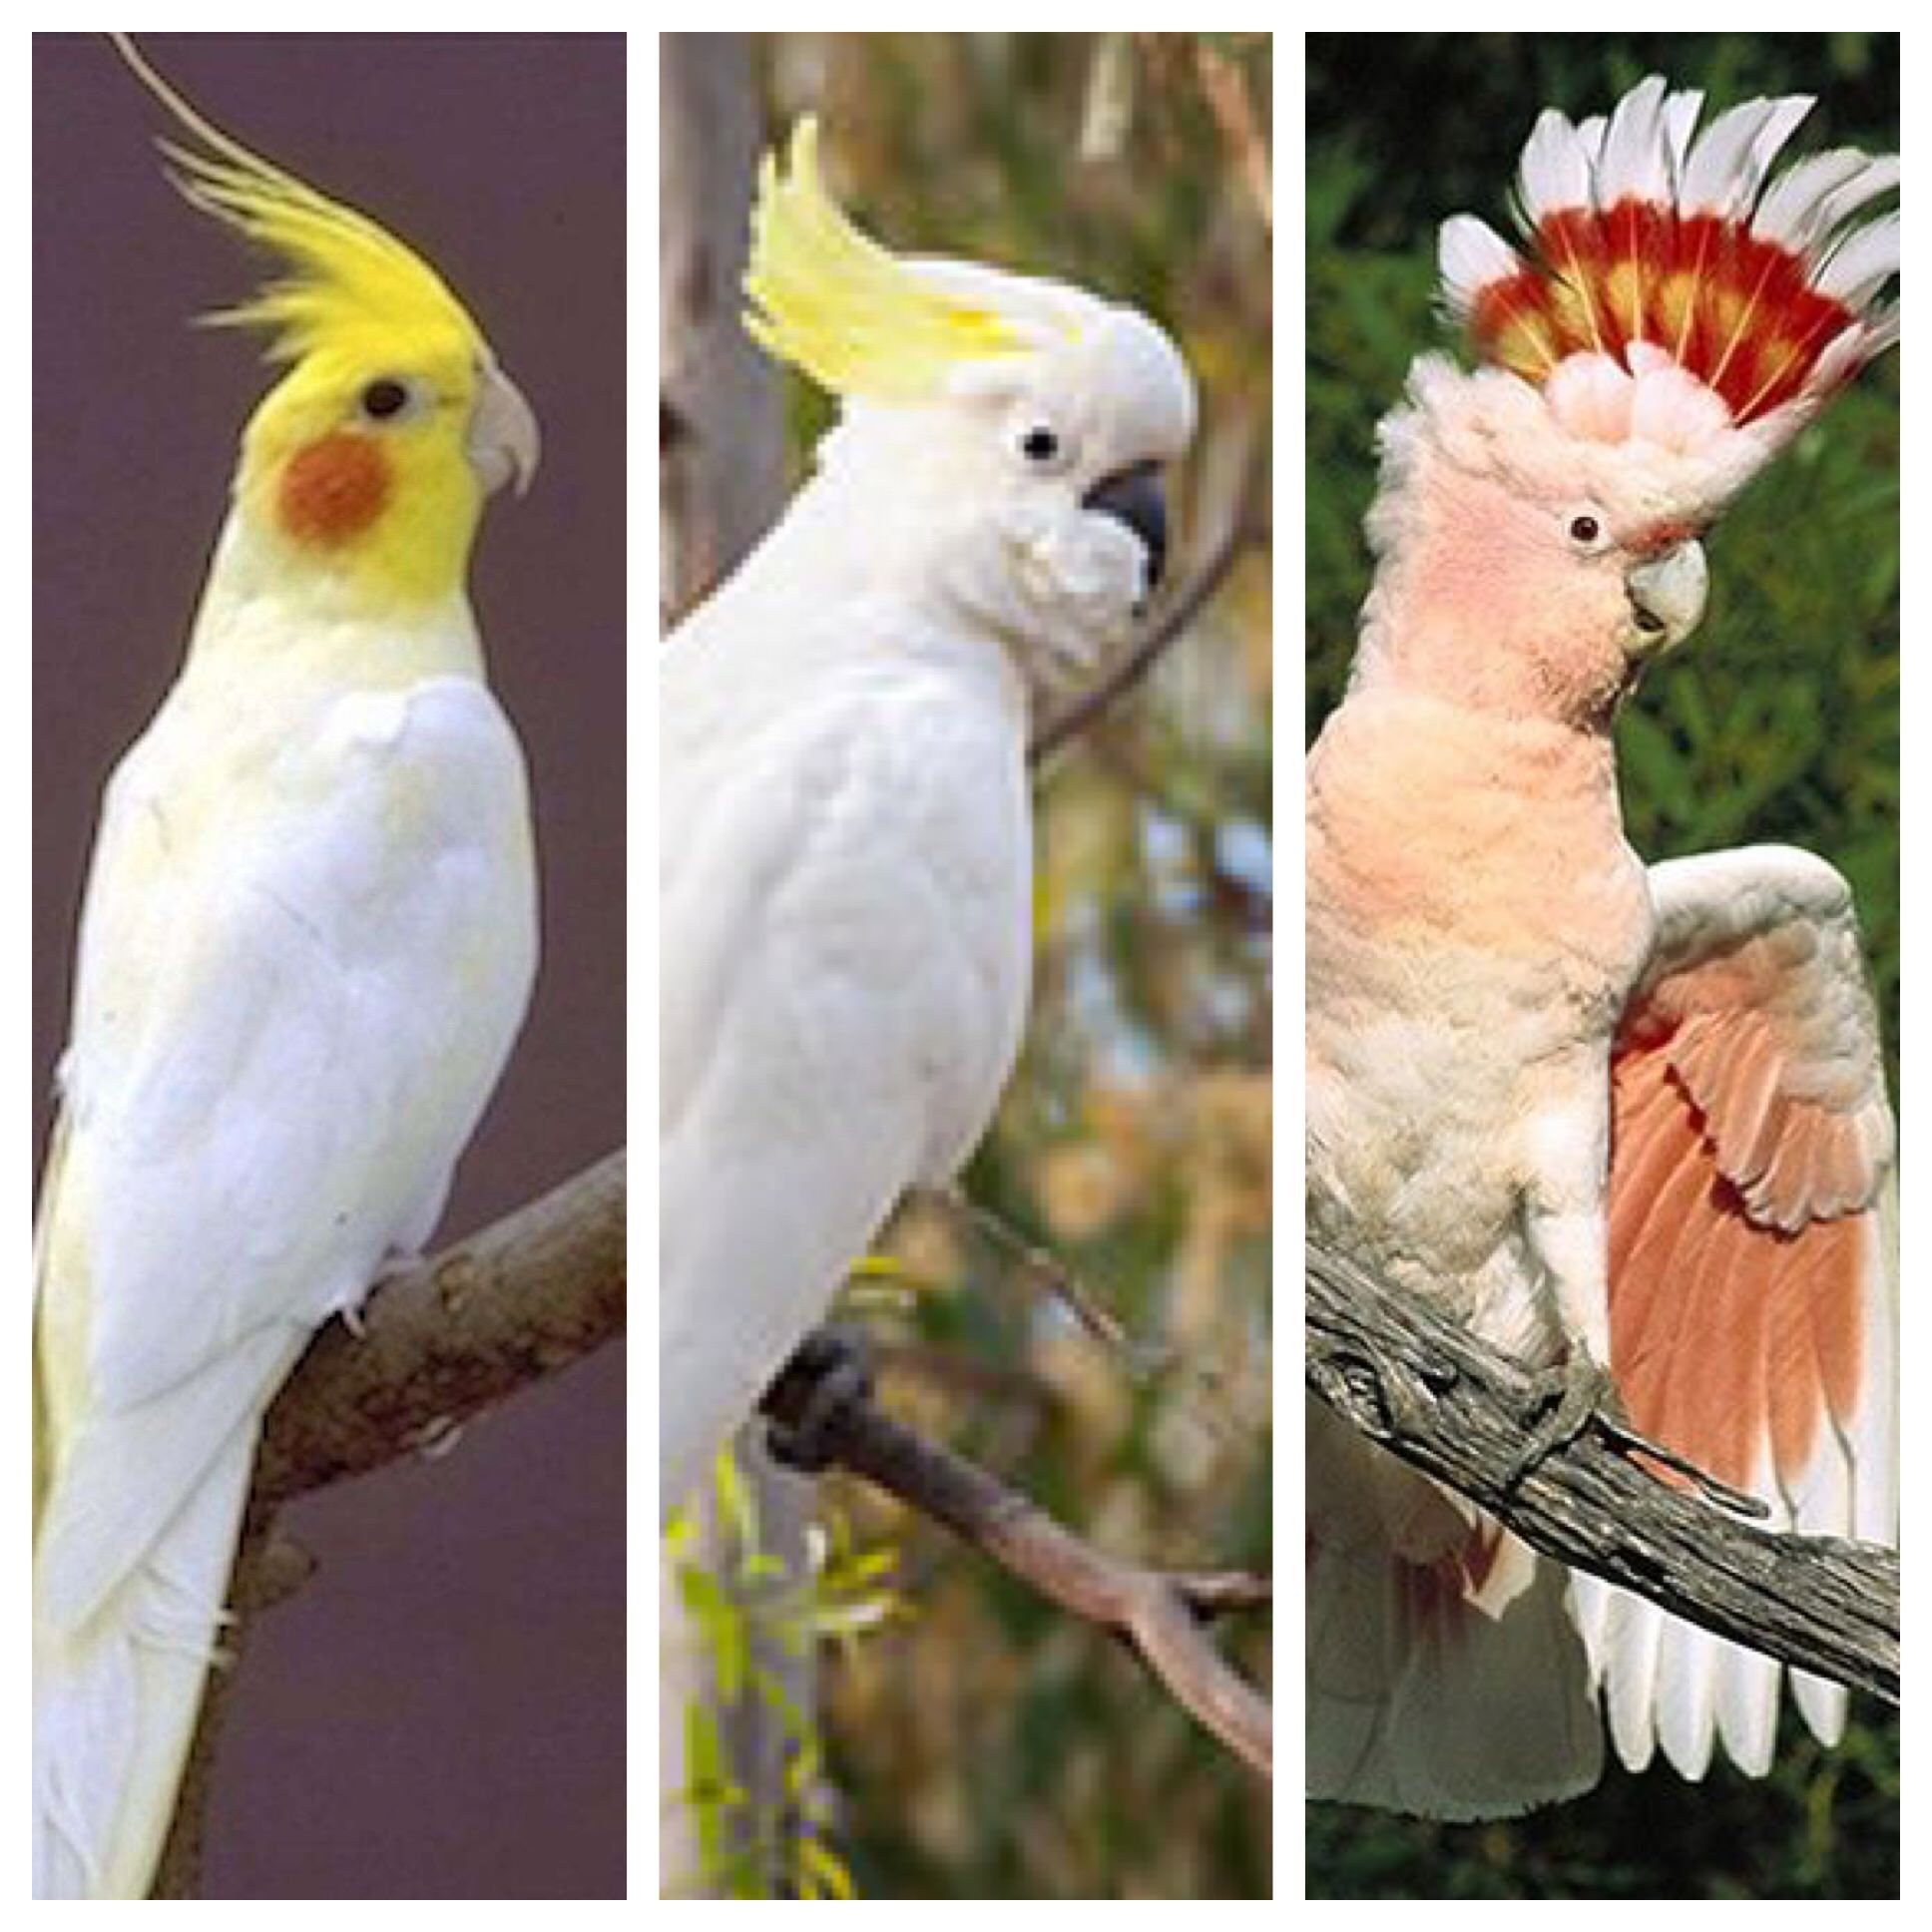 If parrots evolved like Pokémon